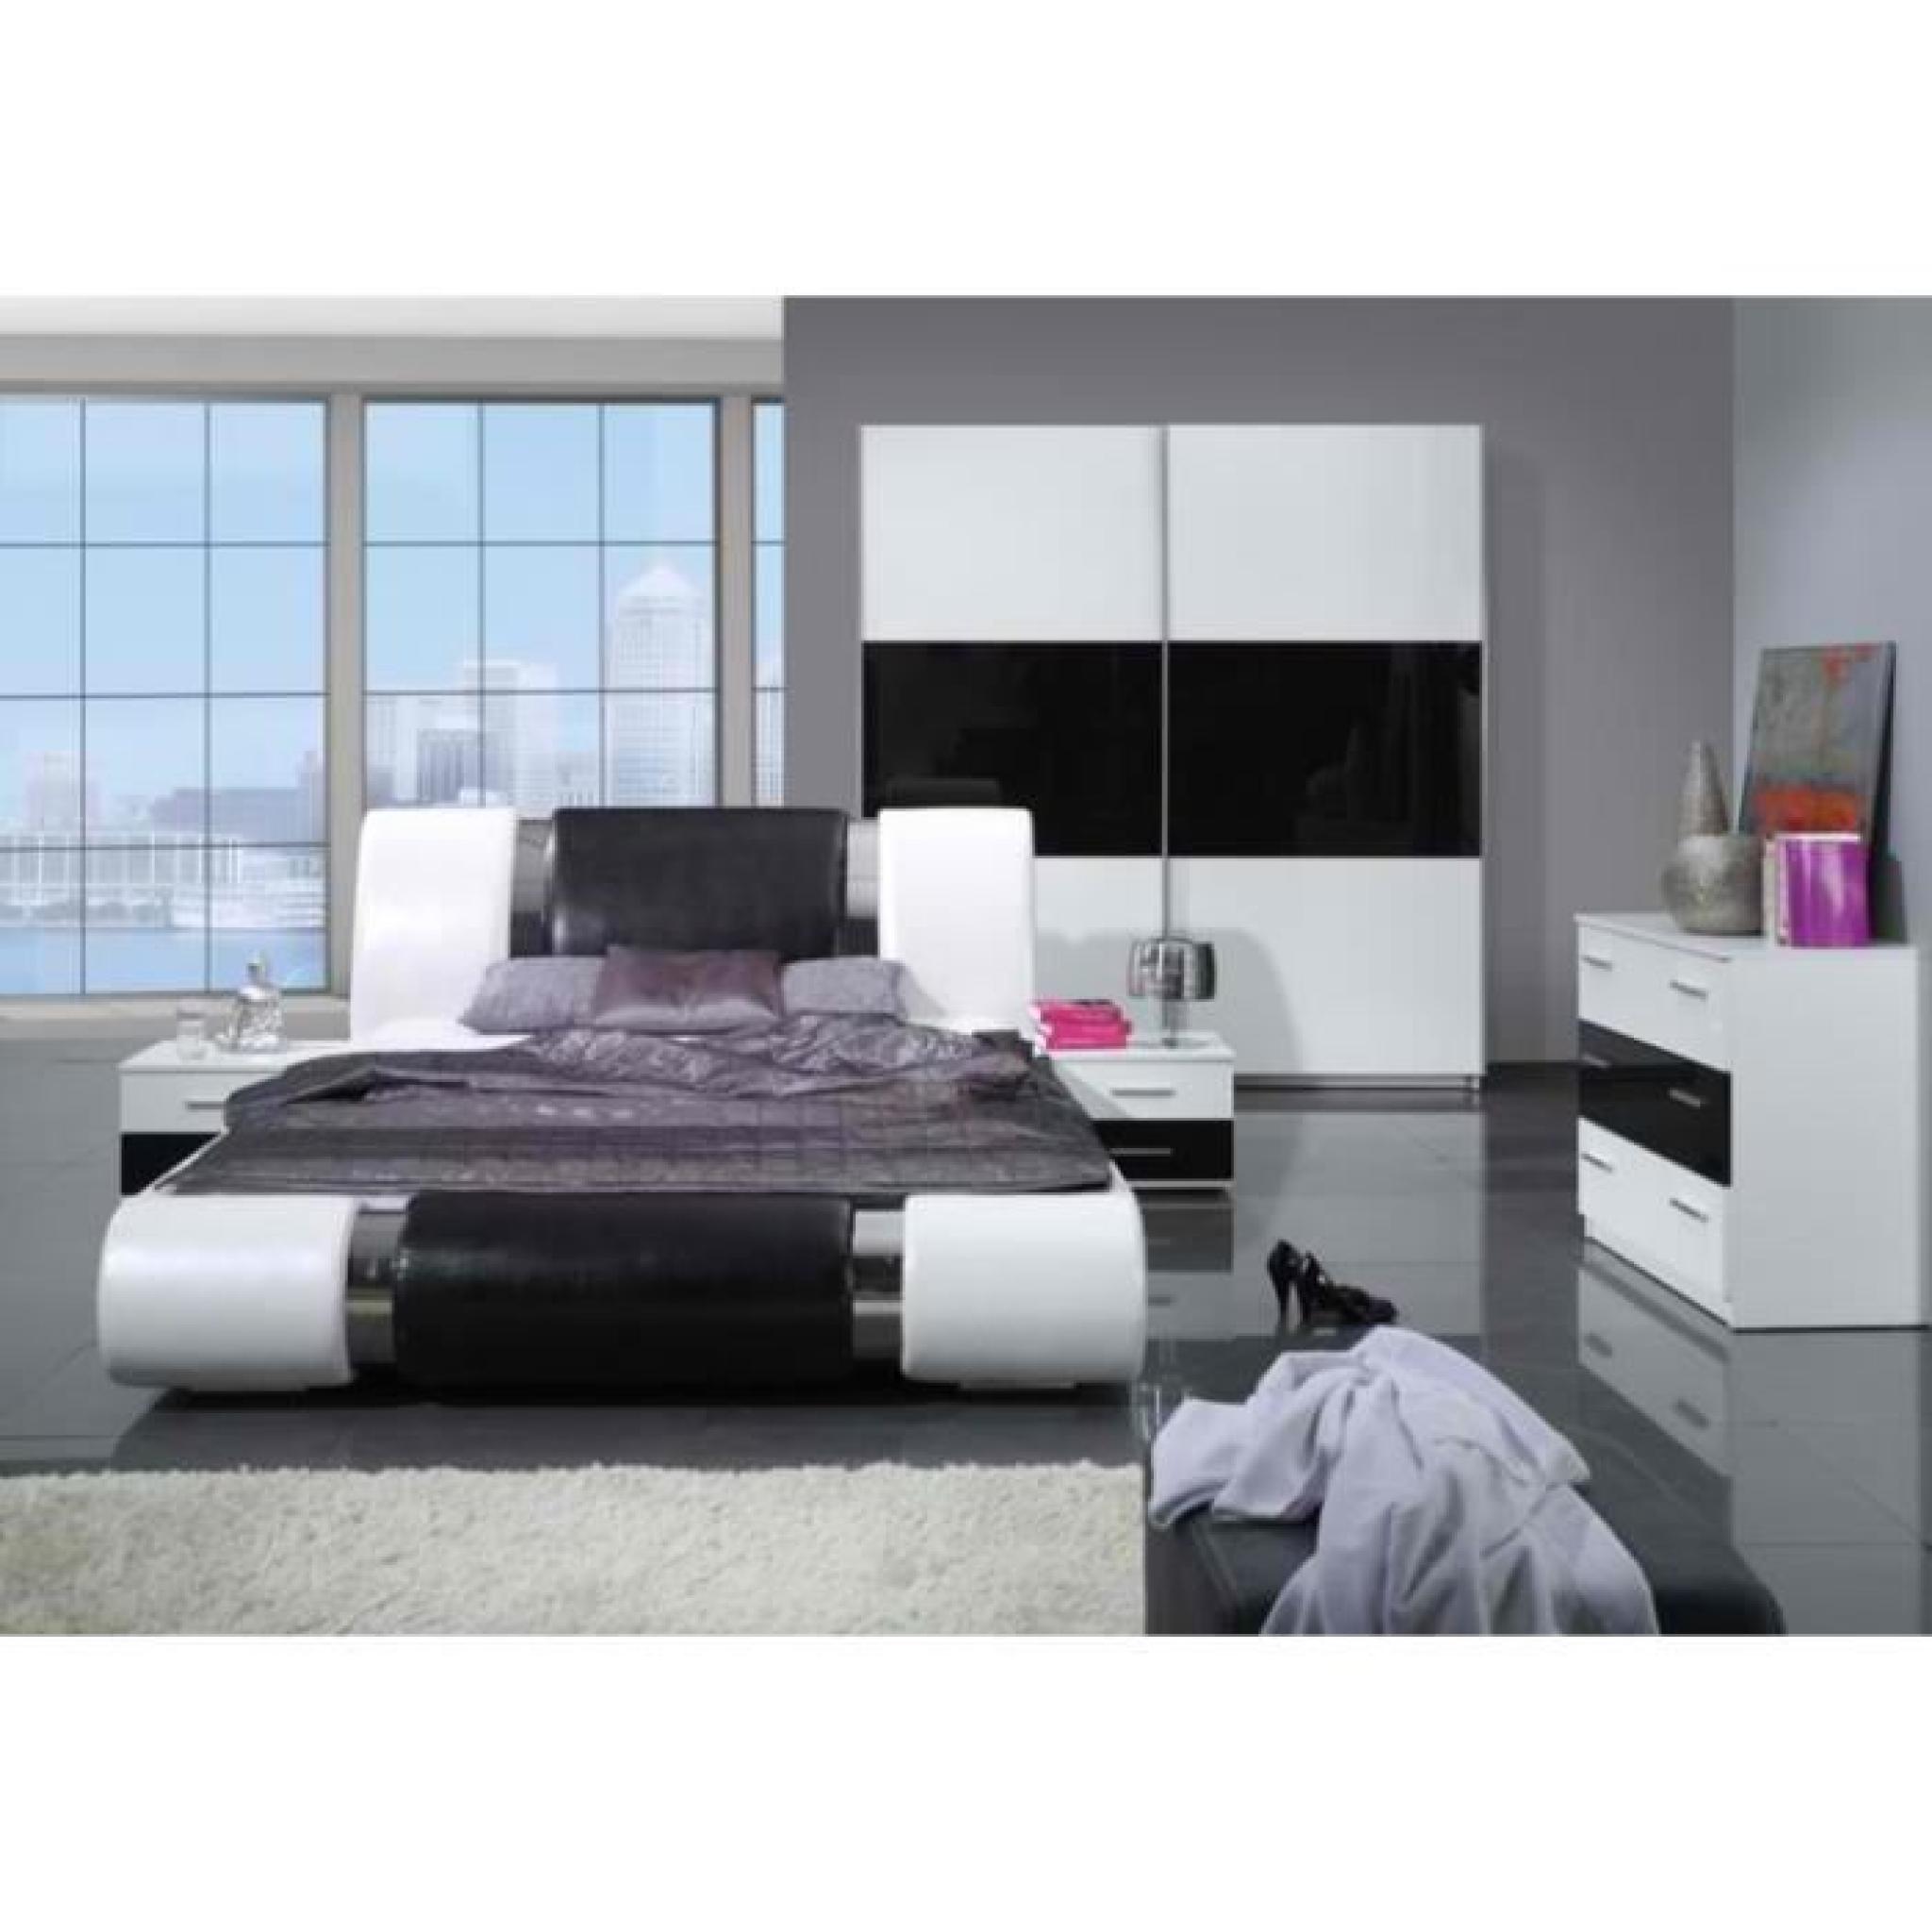 Chambre à coucher complète TEXAS design noire et blanche. Lit + armoire + commode + 2 chevets pas cher